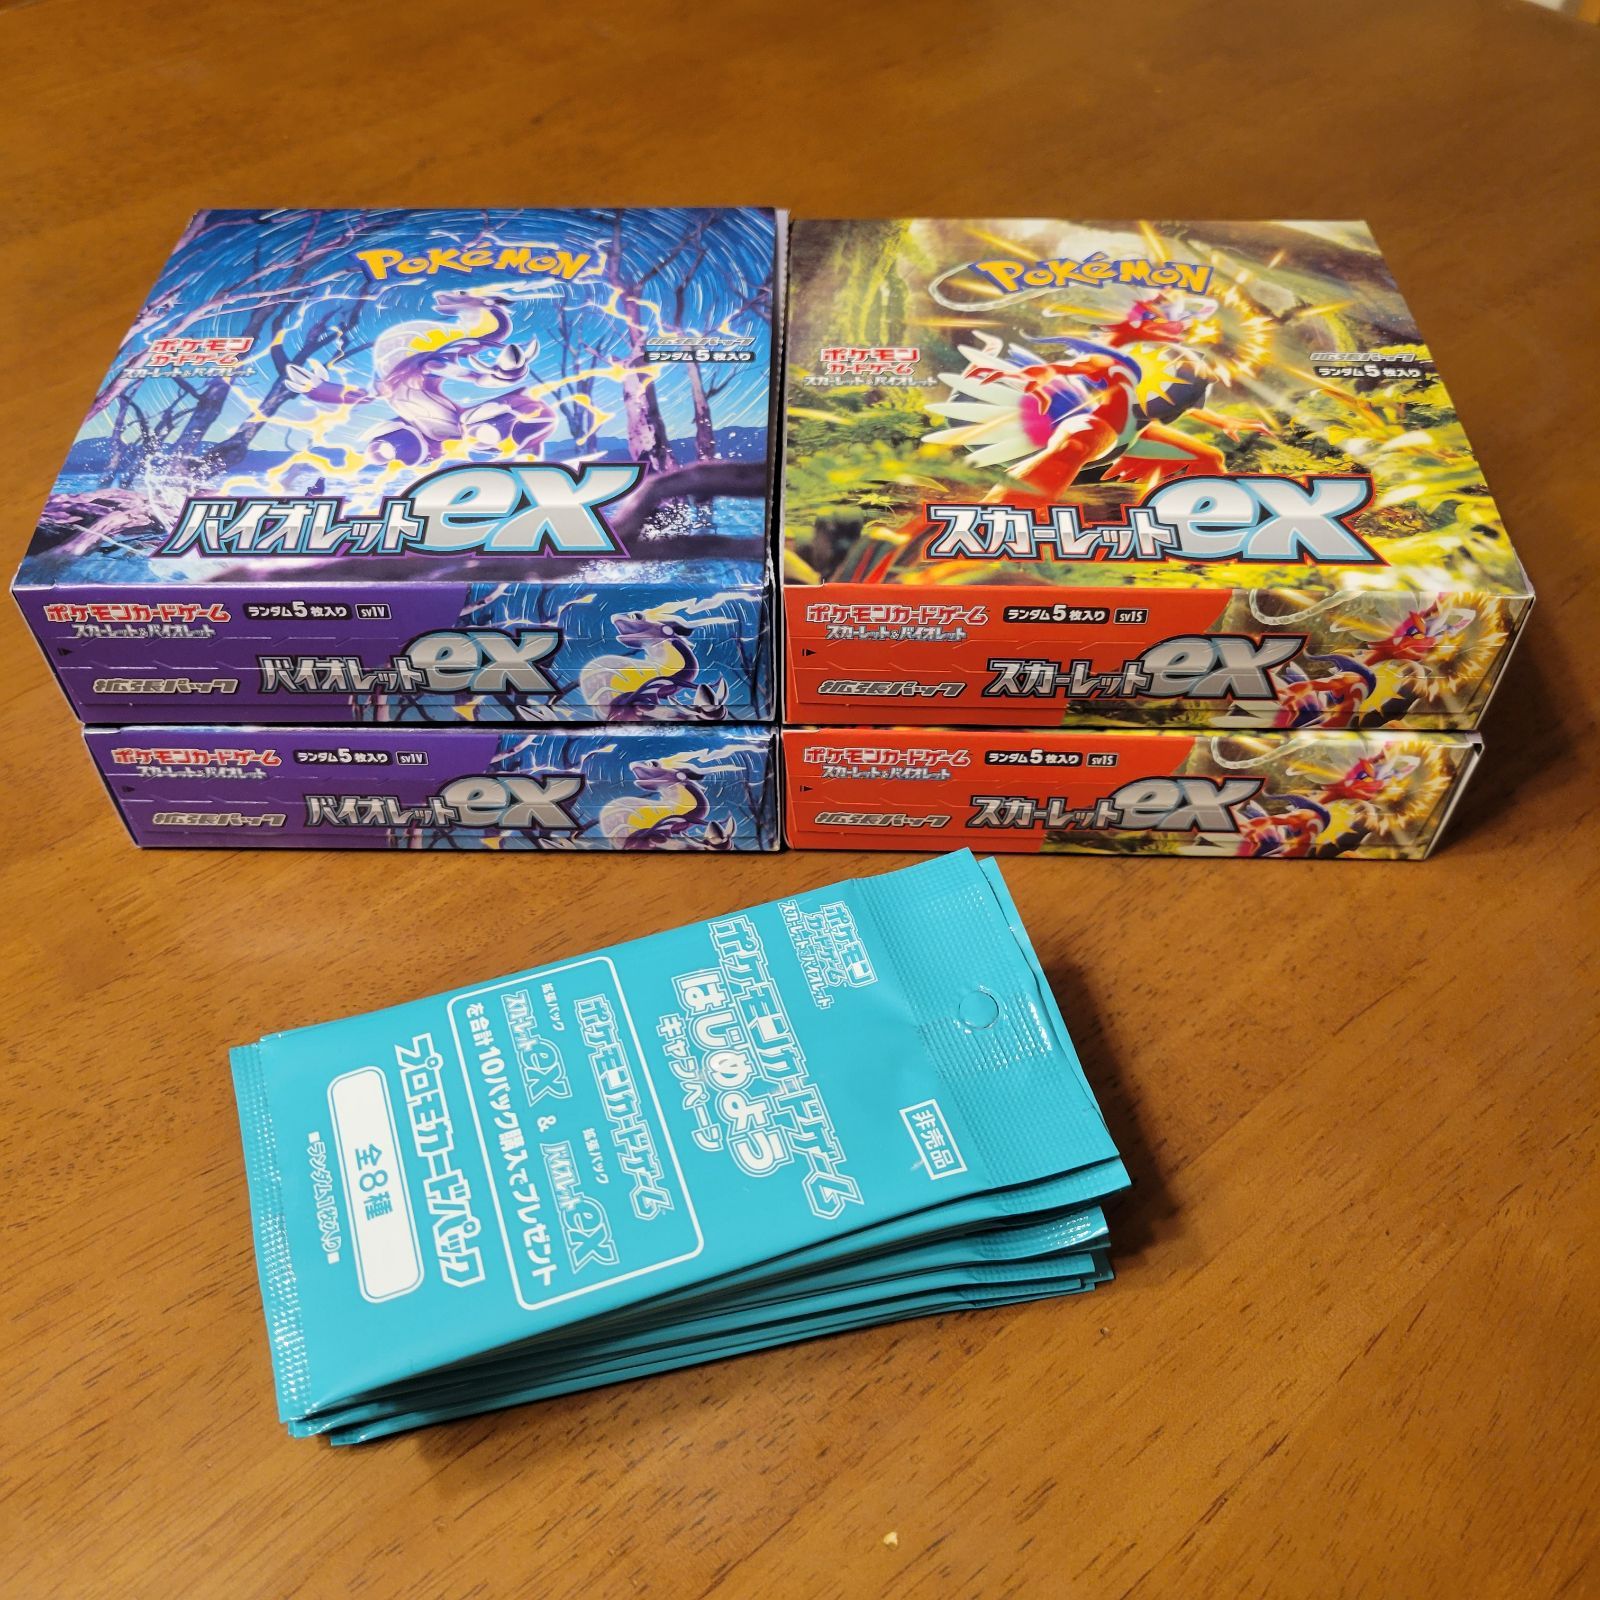 スカーレットex 3box バイオレットex 2box シュリンクなし ポケモンカードゲーム 代引送料無料